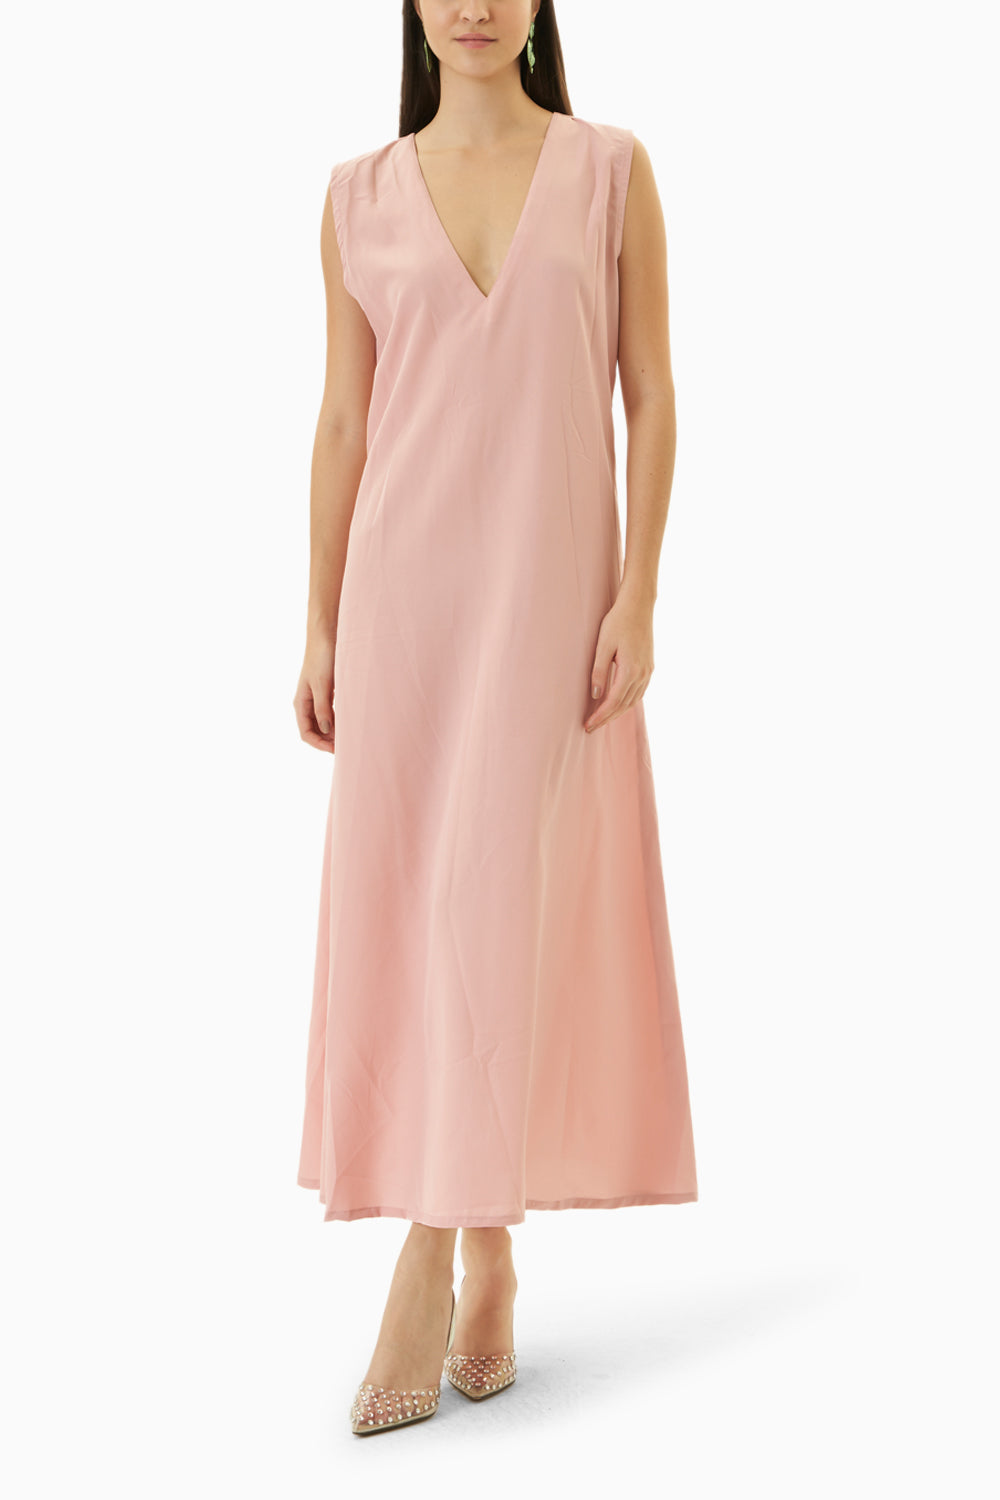 Calypso Pink Maxi Kaftan Dress